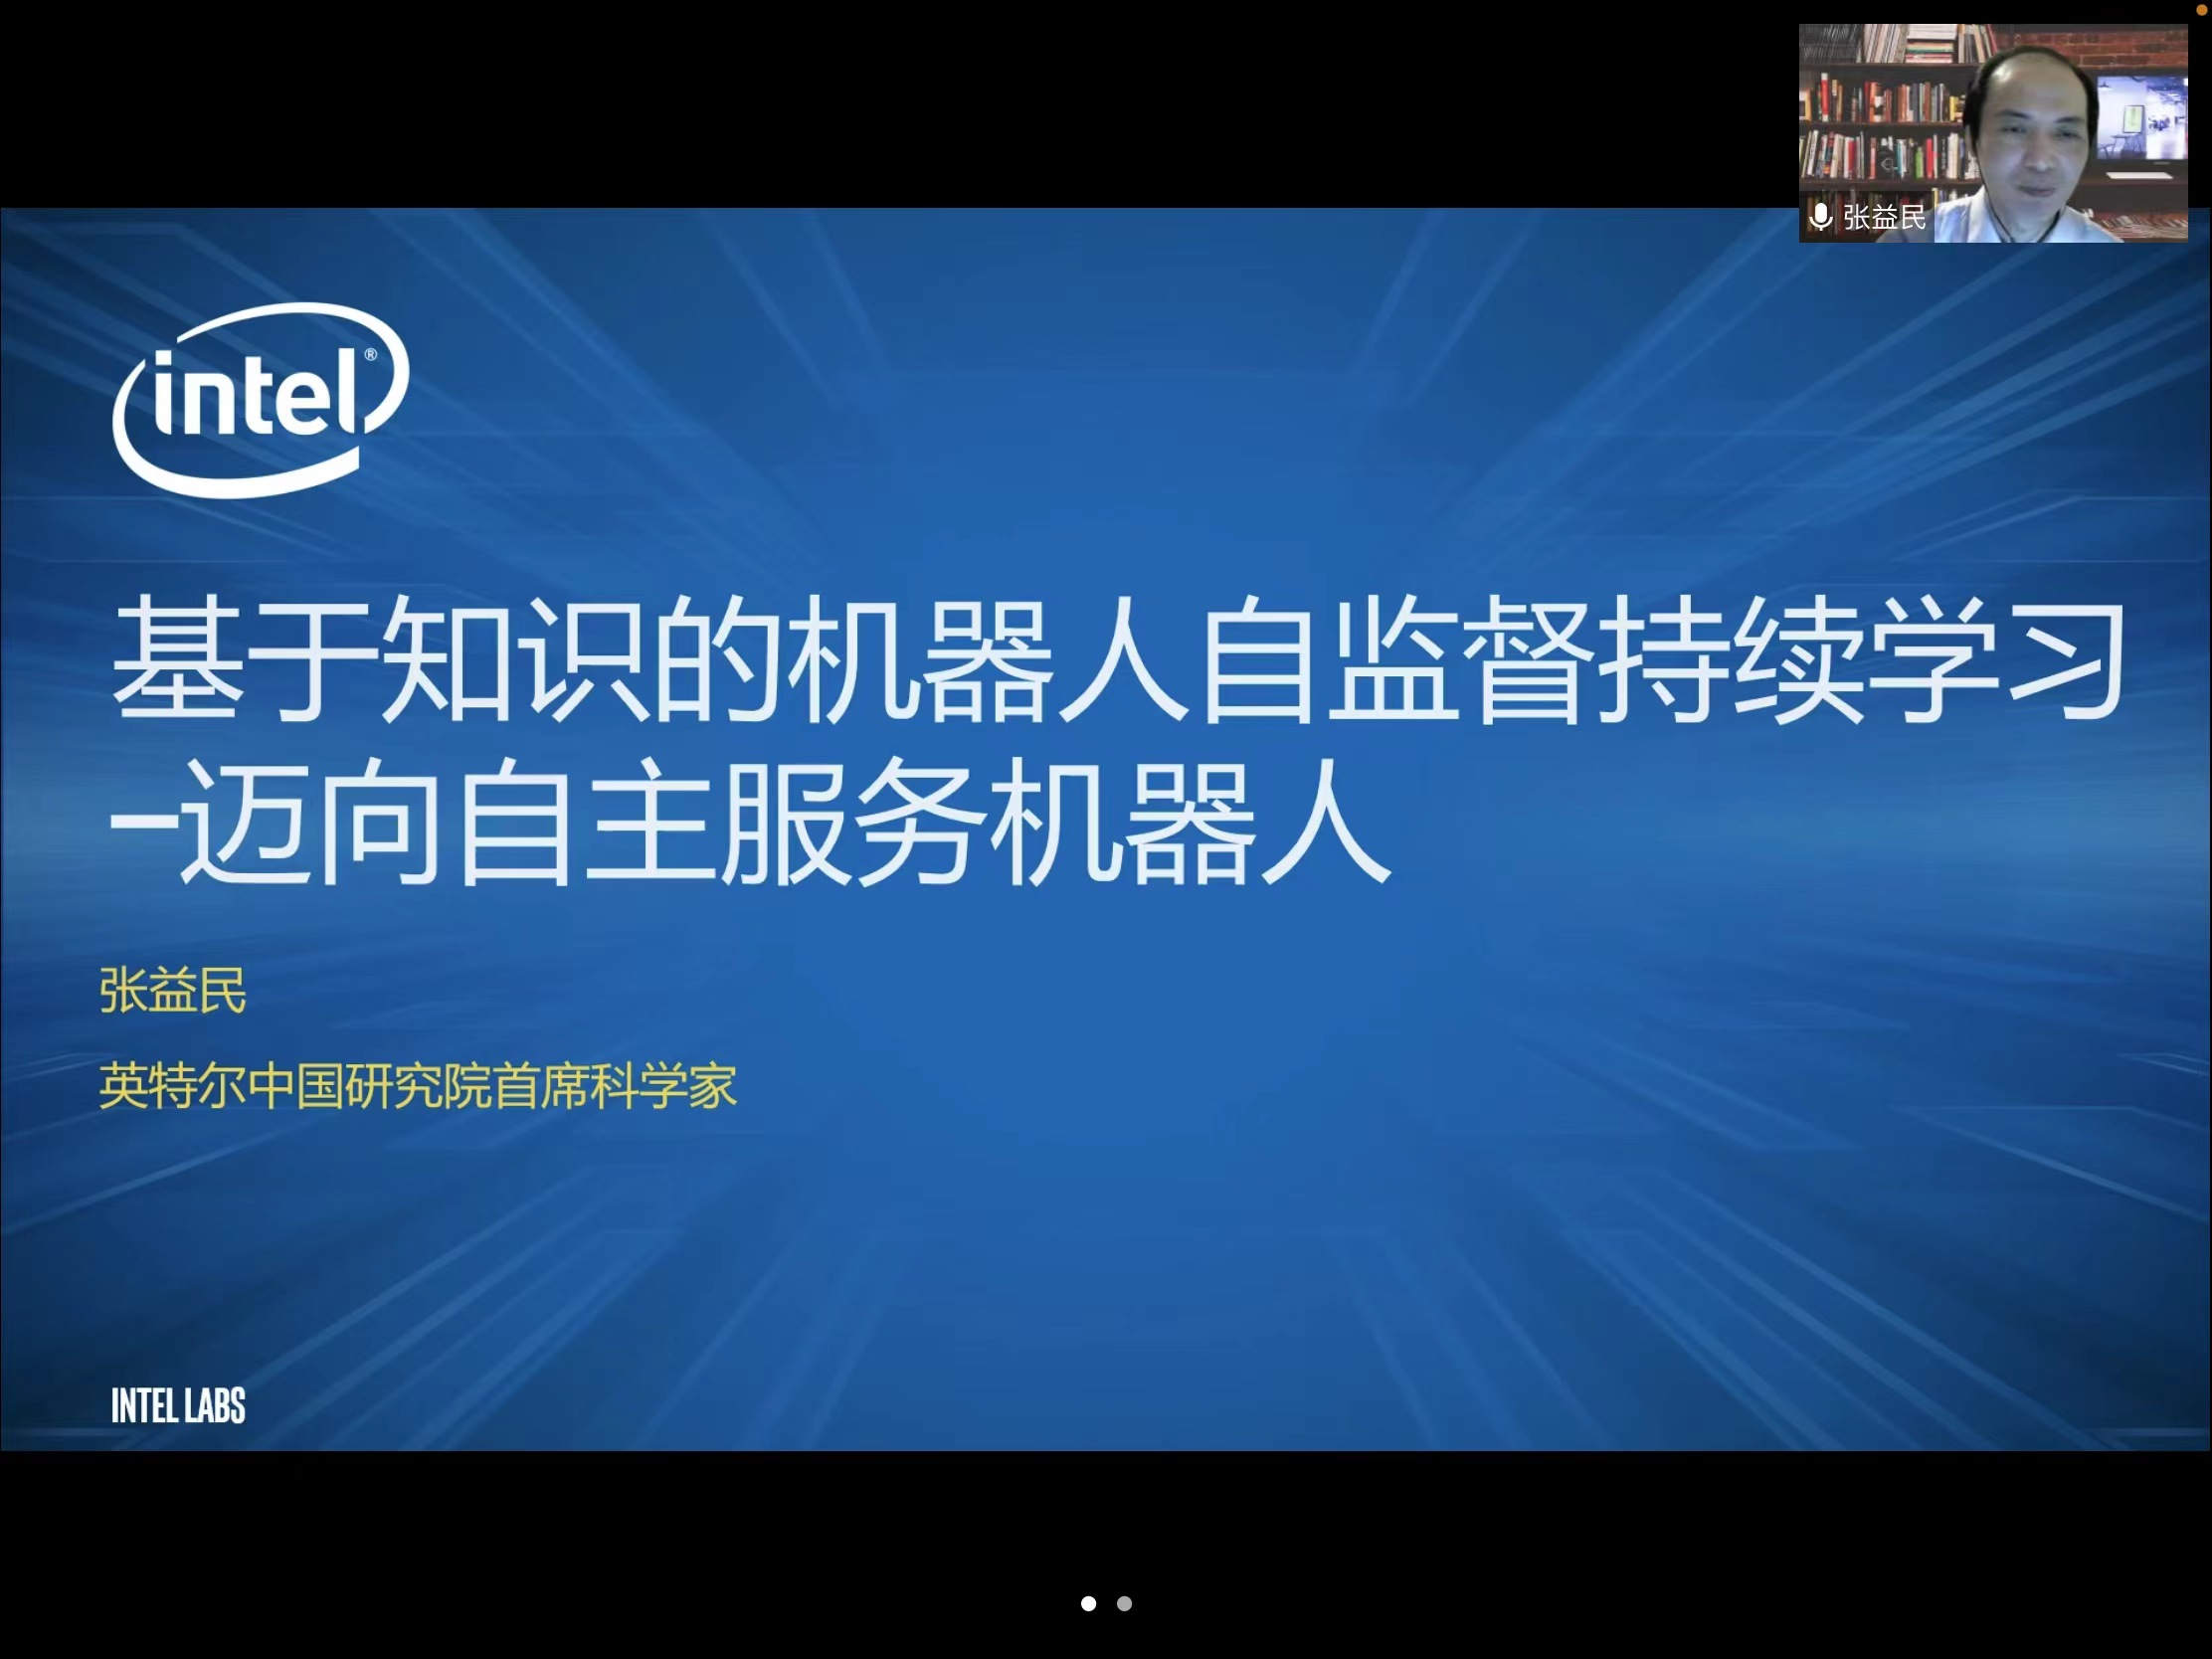 张益民博士 Intel China 首 席科学家